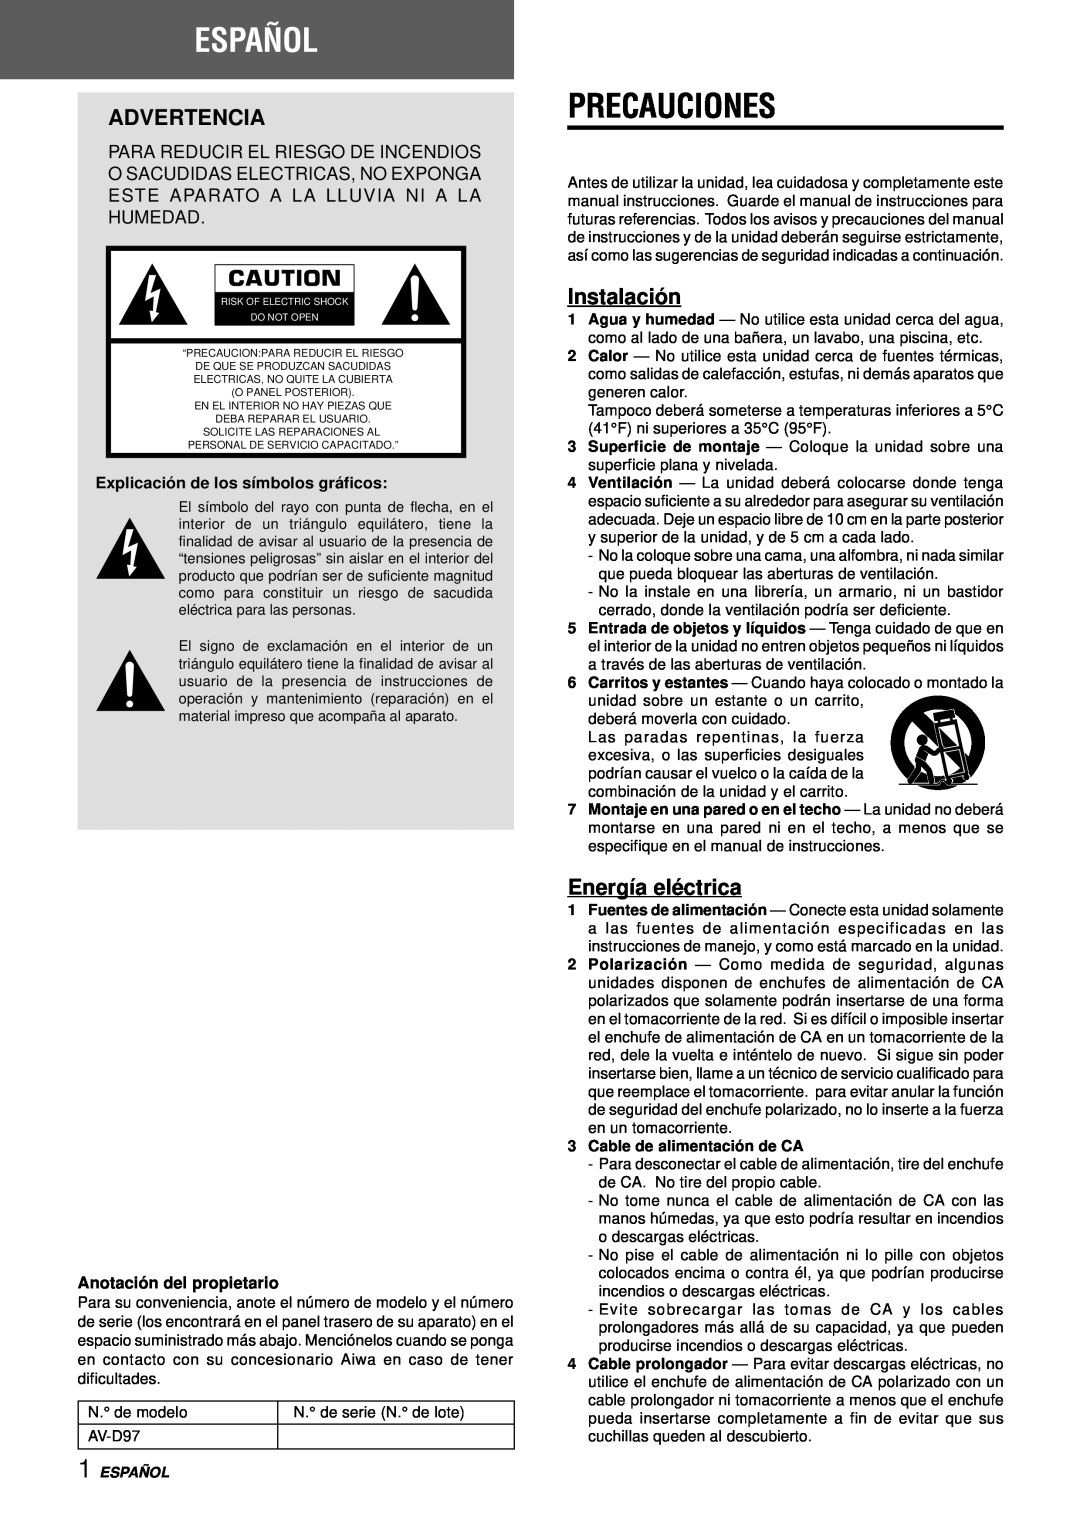 Aiwa AV-D97 Español, Precauciones, Advertencia, Instalación, Energía eléctrica, Explicació n de los símbolos grá ficos 